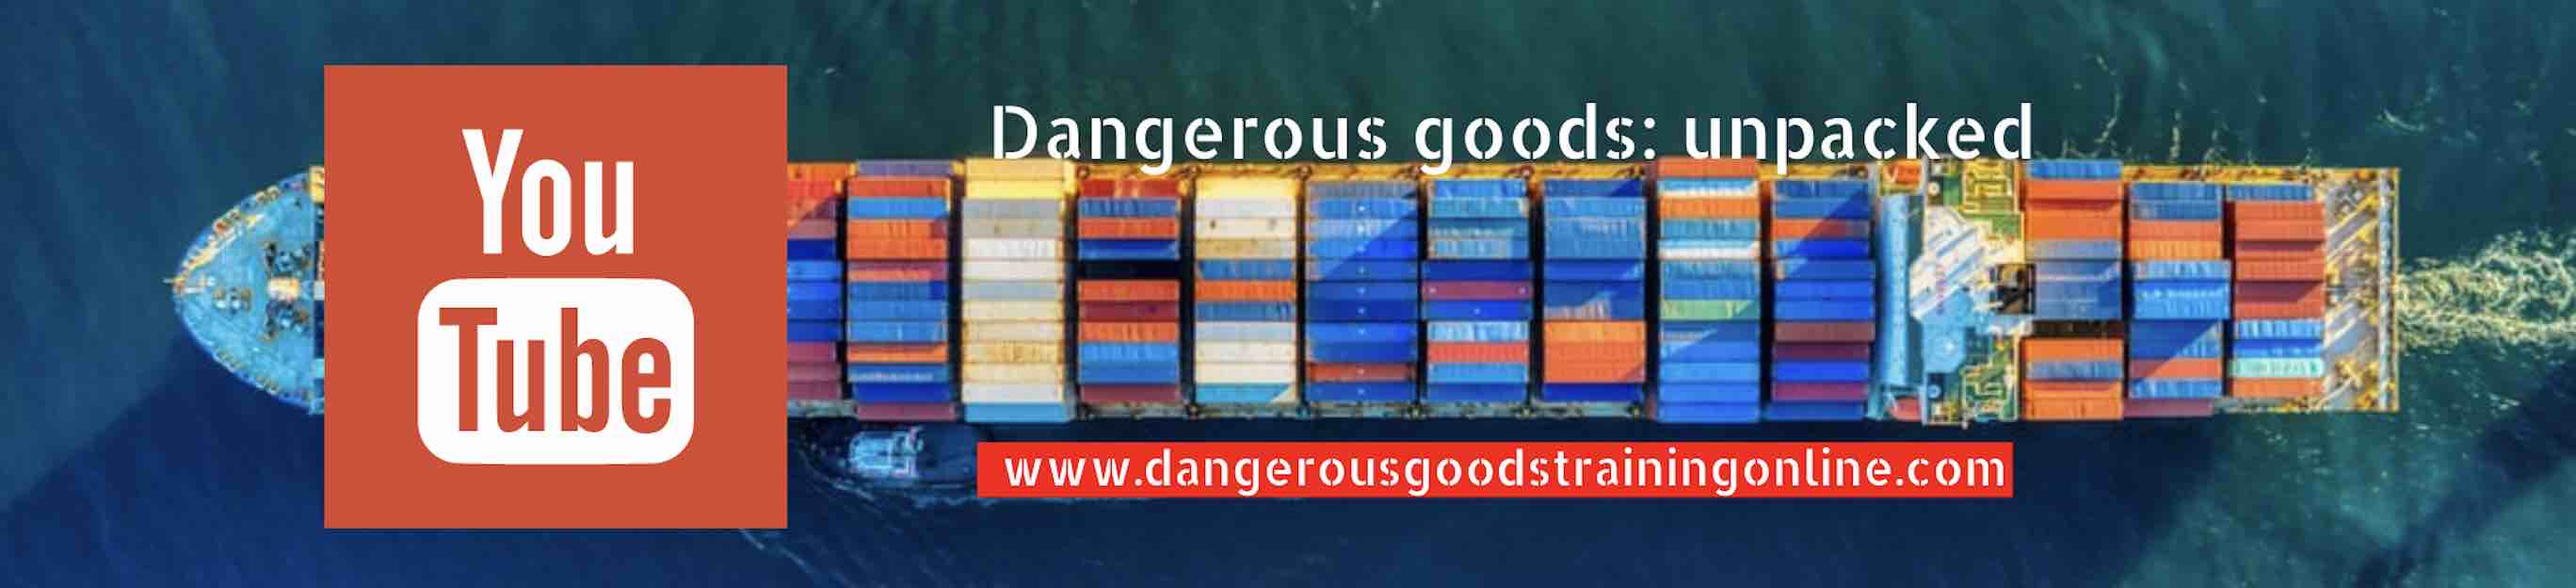 dangerous goods training online youtube blog